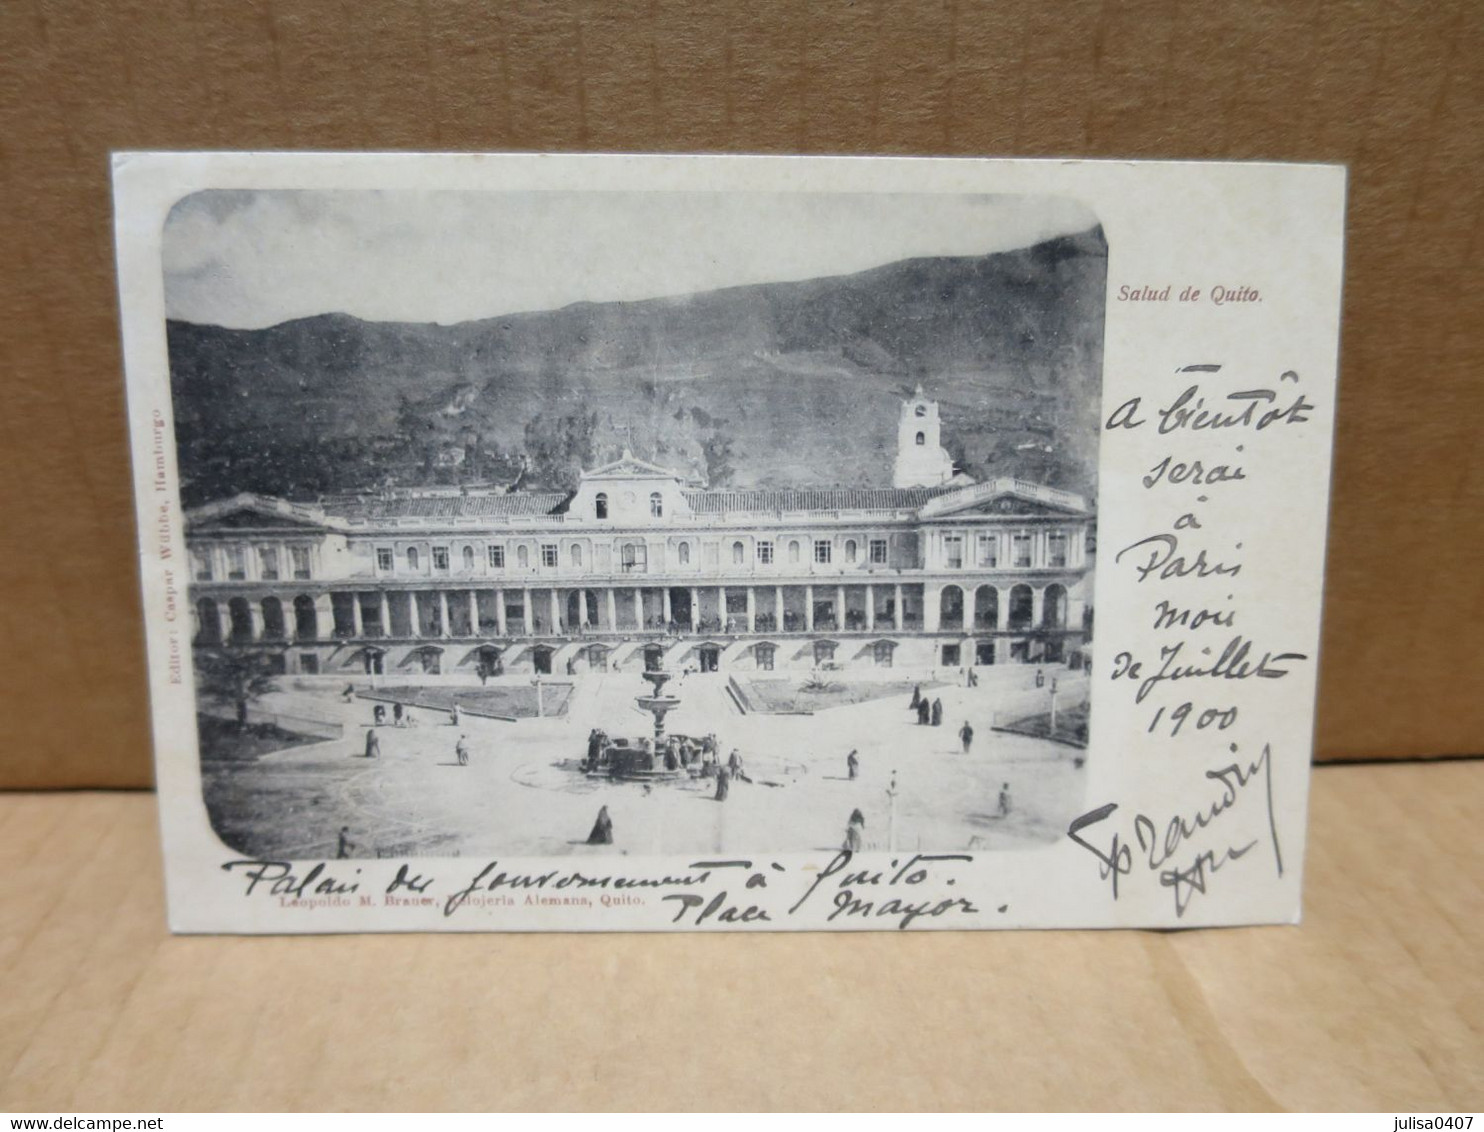 QUITO (Equateur) Place Palais 1900 - Equateur